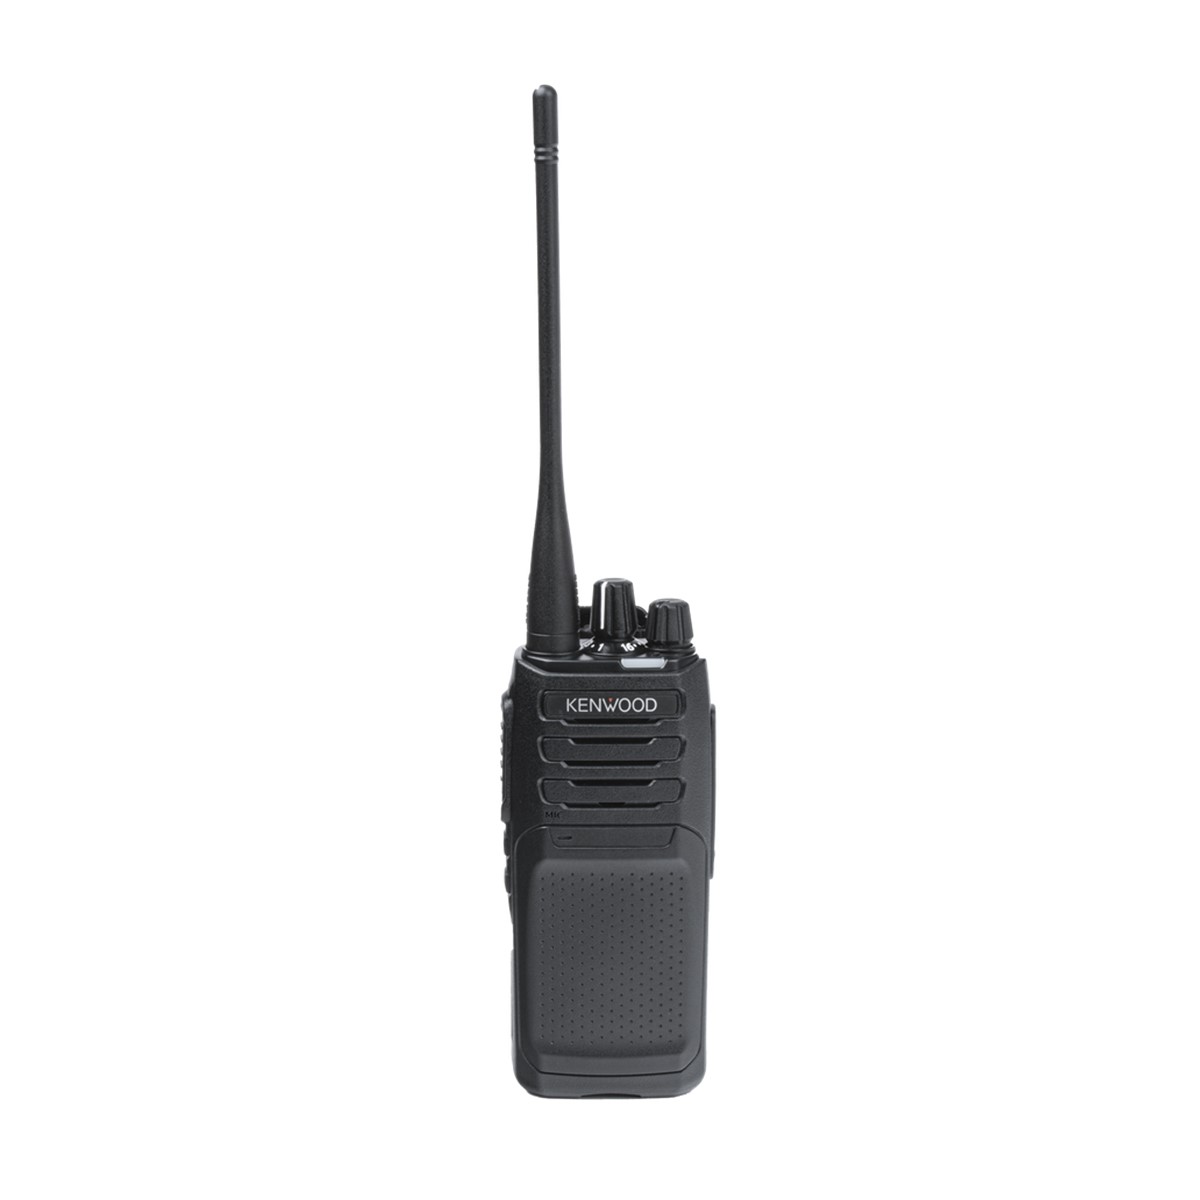 Radio KENWOOD NX-1300-DK4-ES Digital UHF 450-520 MHz sin pantalla y sin teclado intrínsecamente seguro